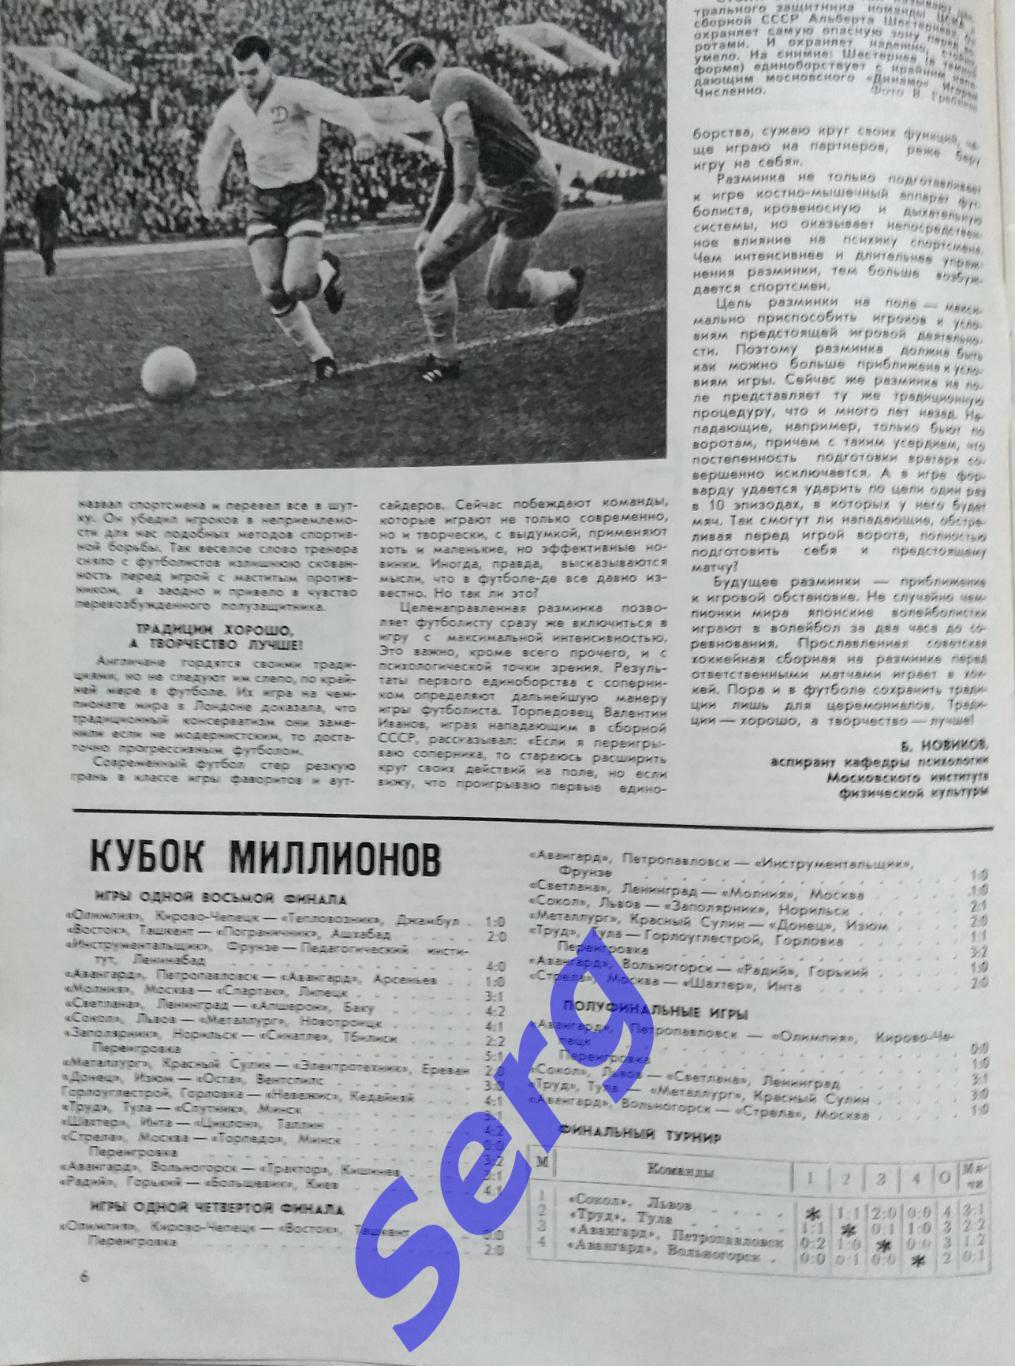 Журнал Спортивные игры №1 1968 год 2